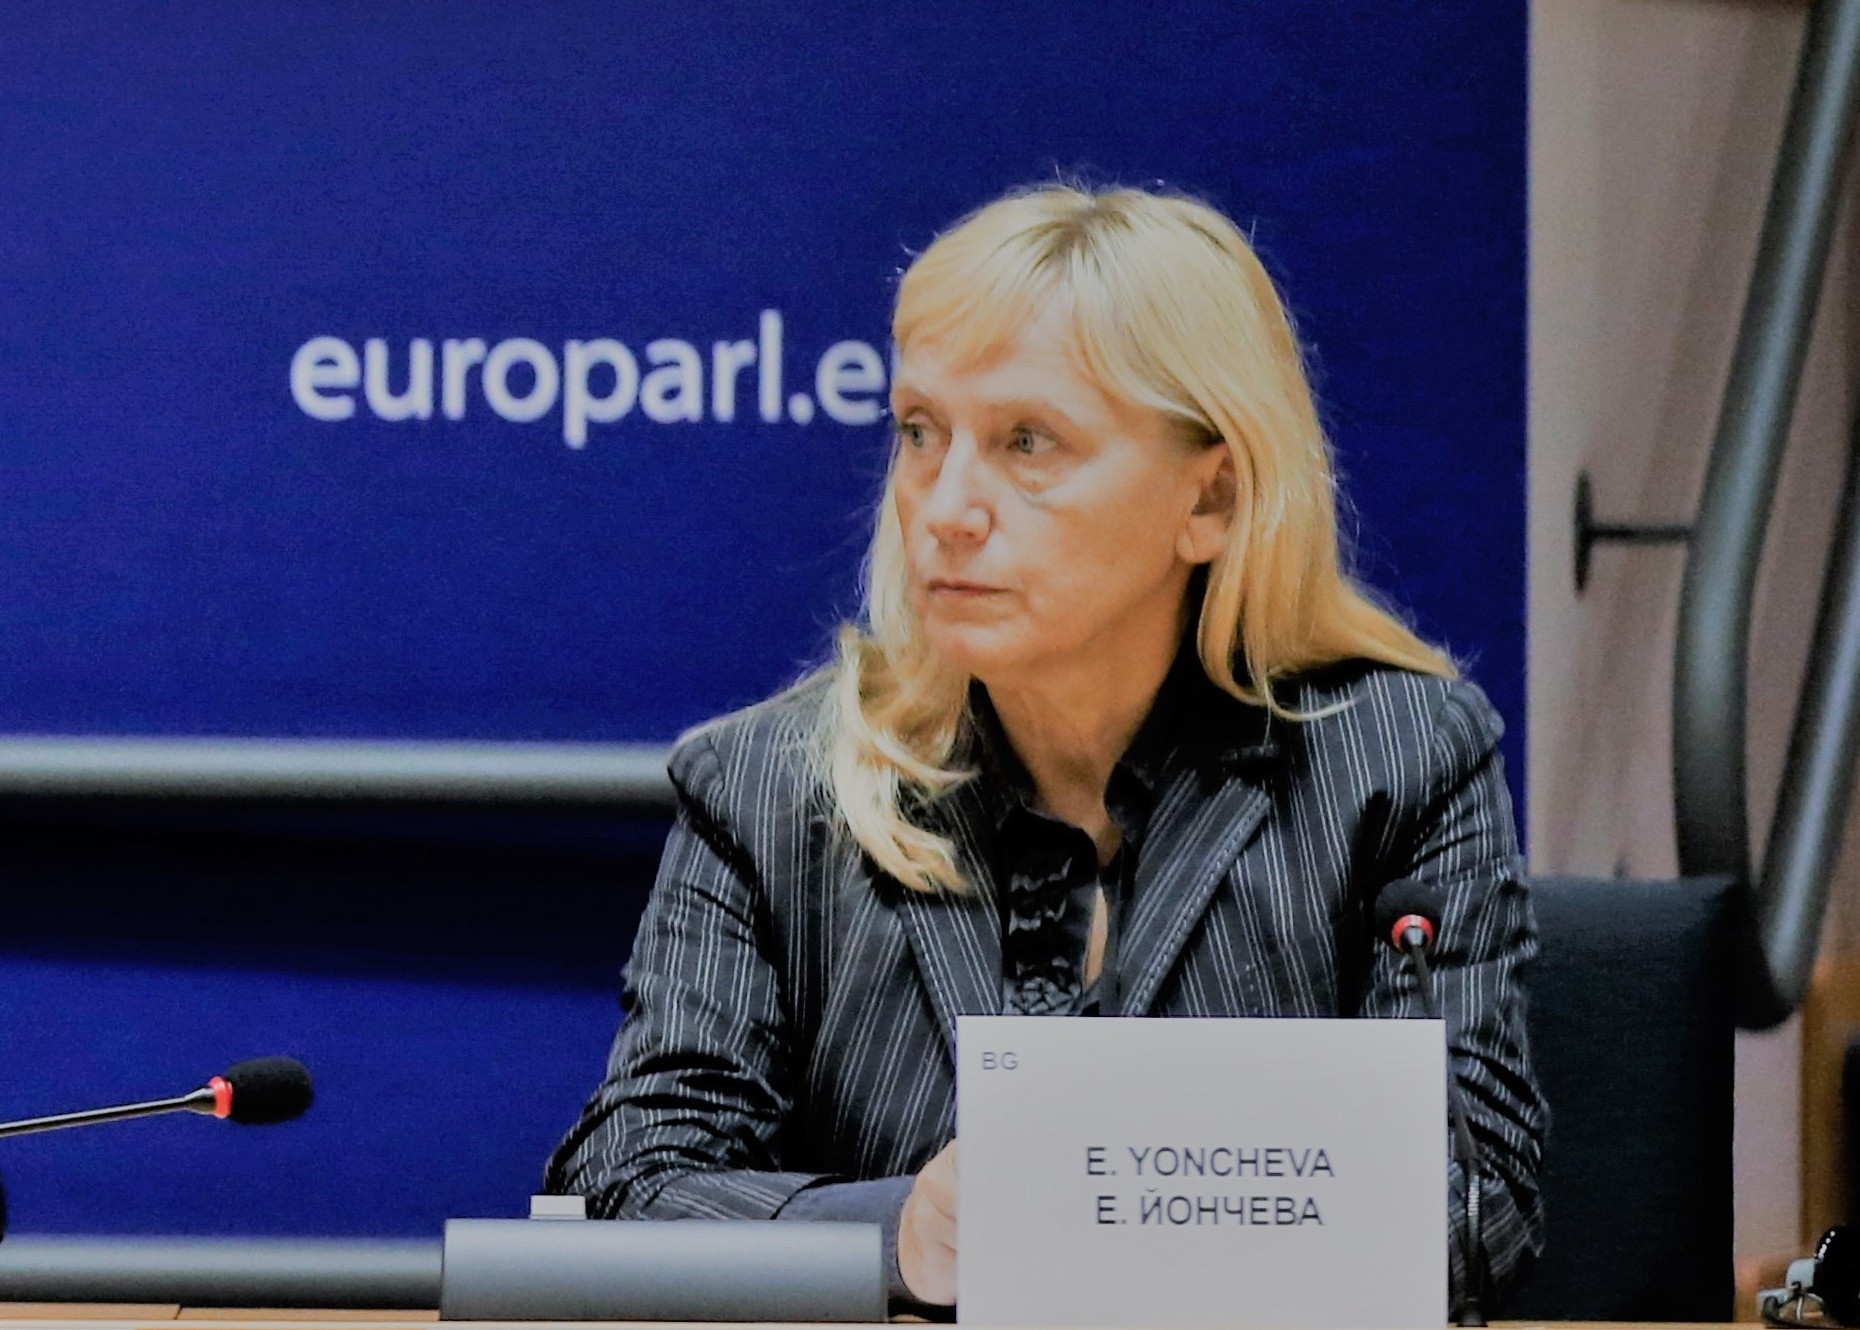 Елена Йончева: Досега на България не се обръщаше много внимание в ЕС заради поведението на Бойко Борисов в Брюксел като 